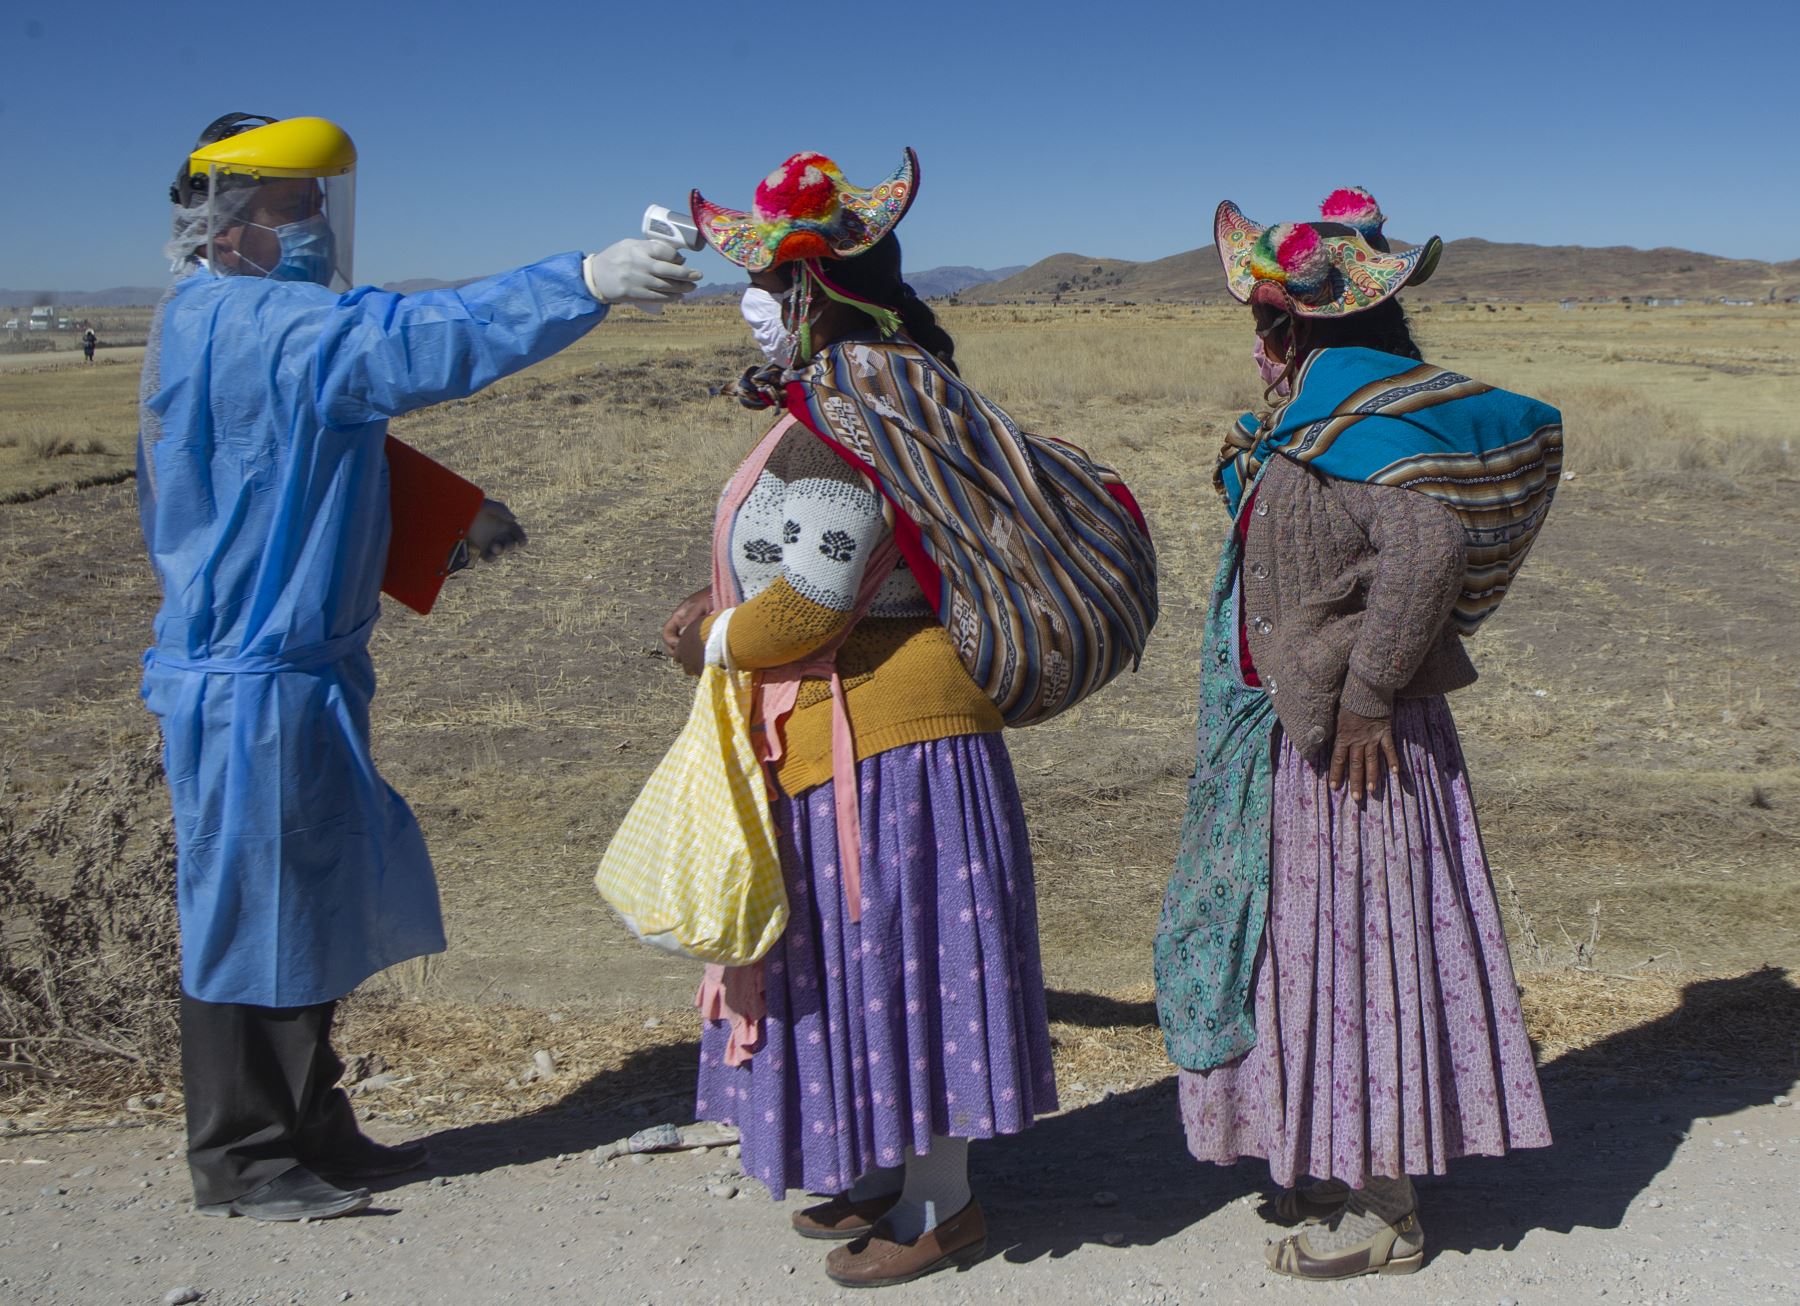 La crisis por la pandemia tiene efectos devastadores que se sienten "duramente" en Bolivia. Foto: AFP.